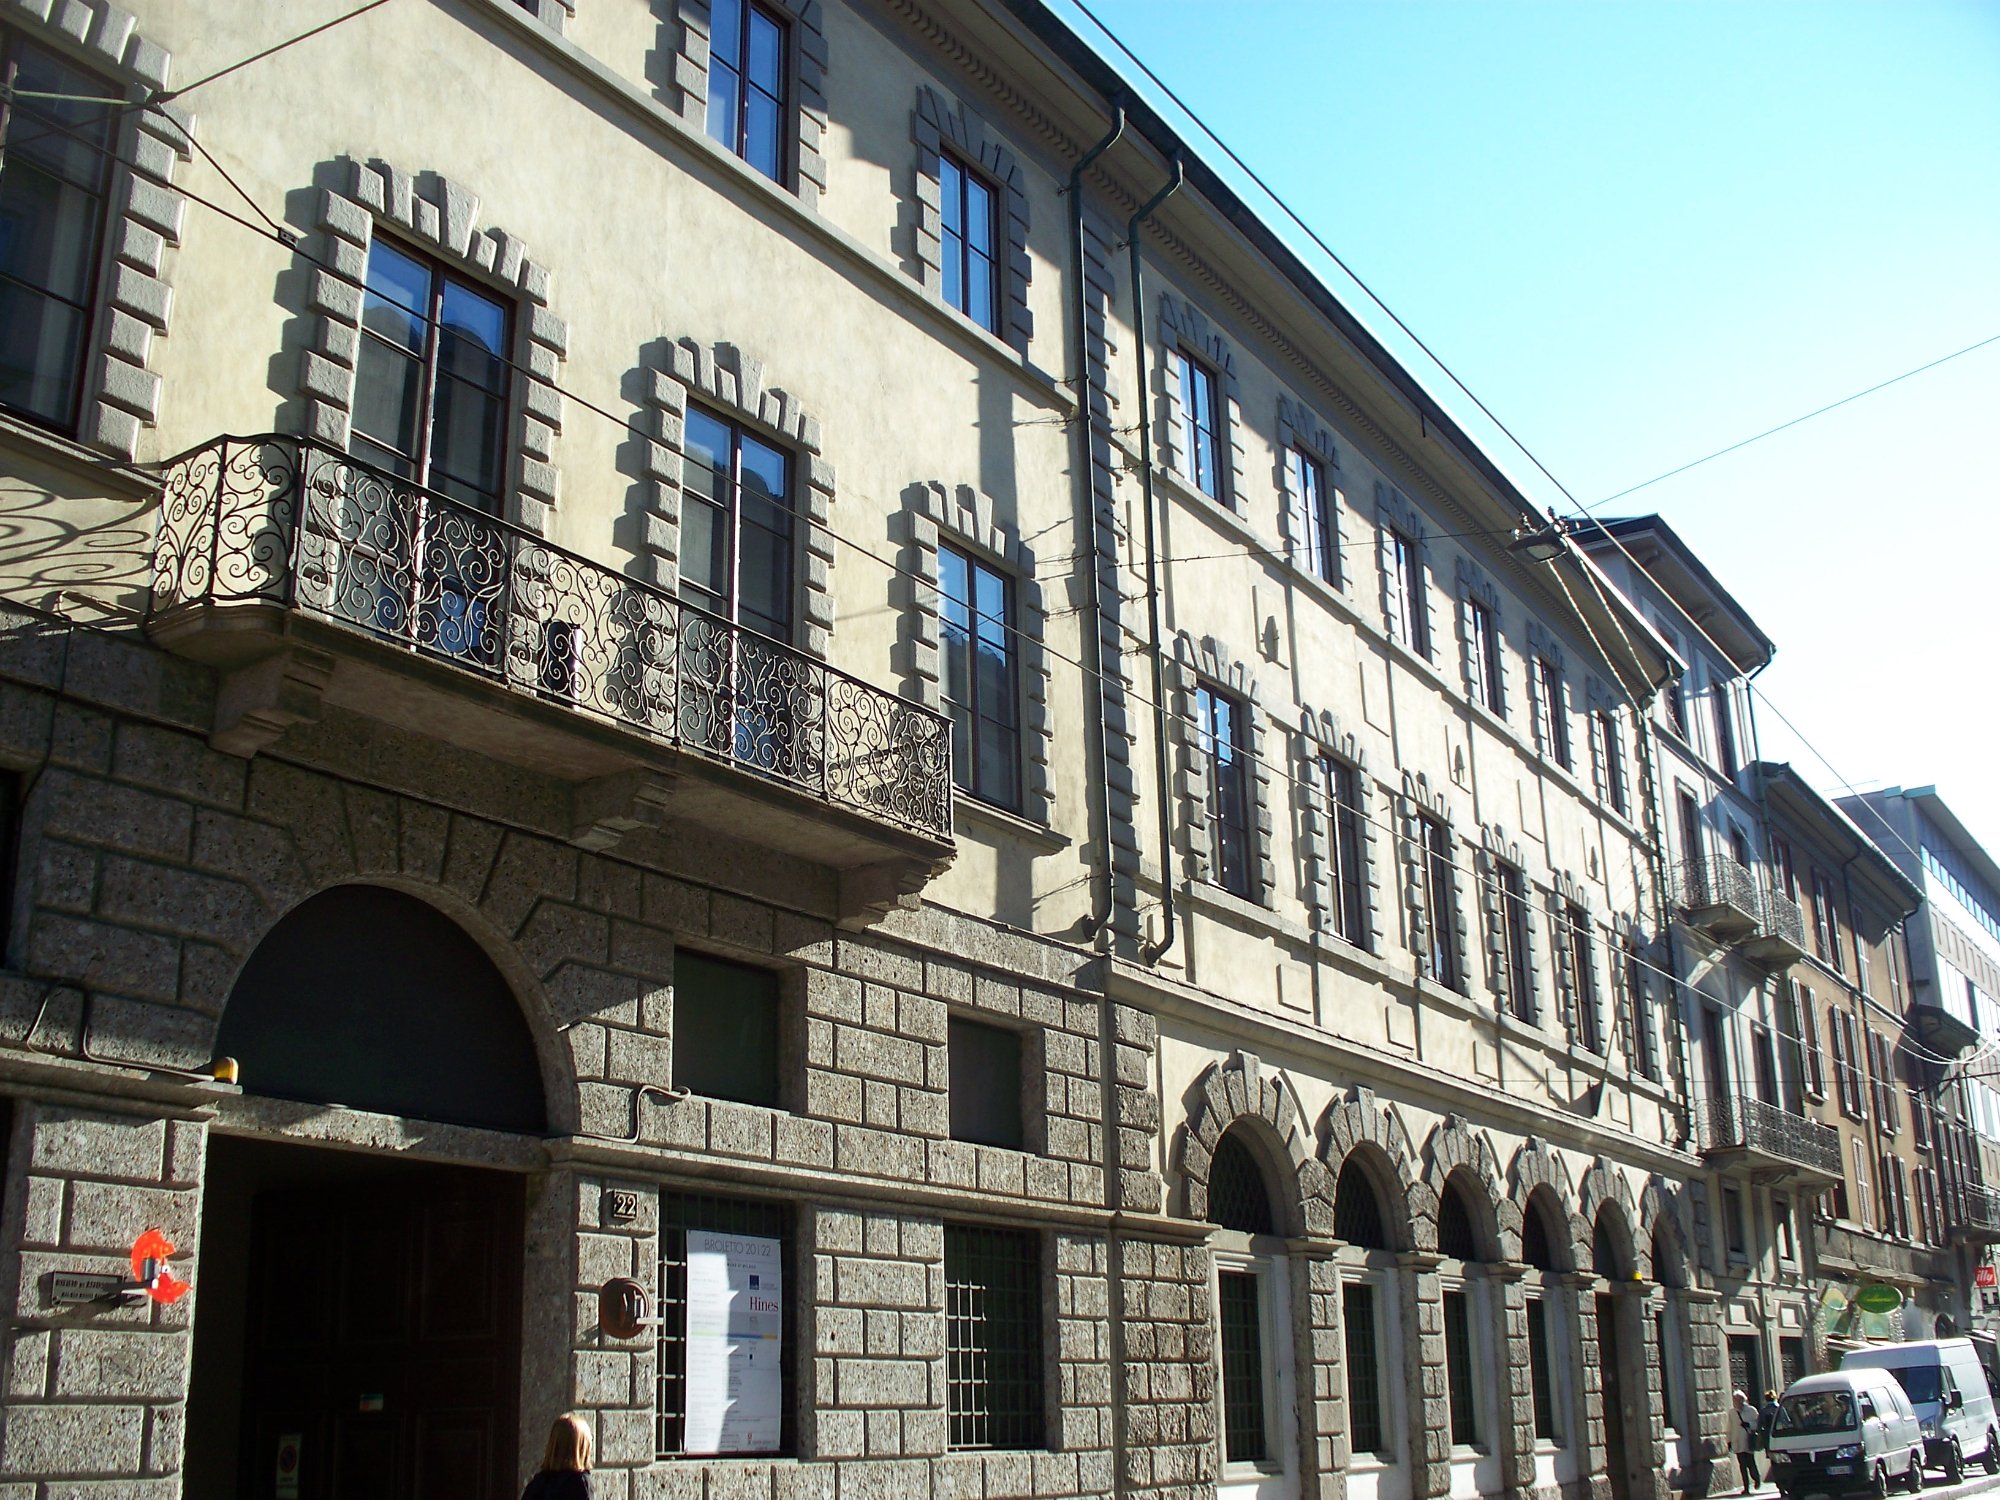 Palazzo Aliverti